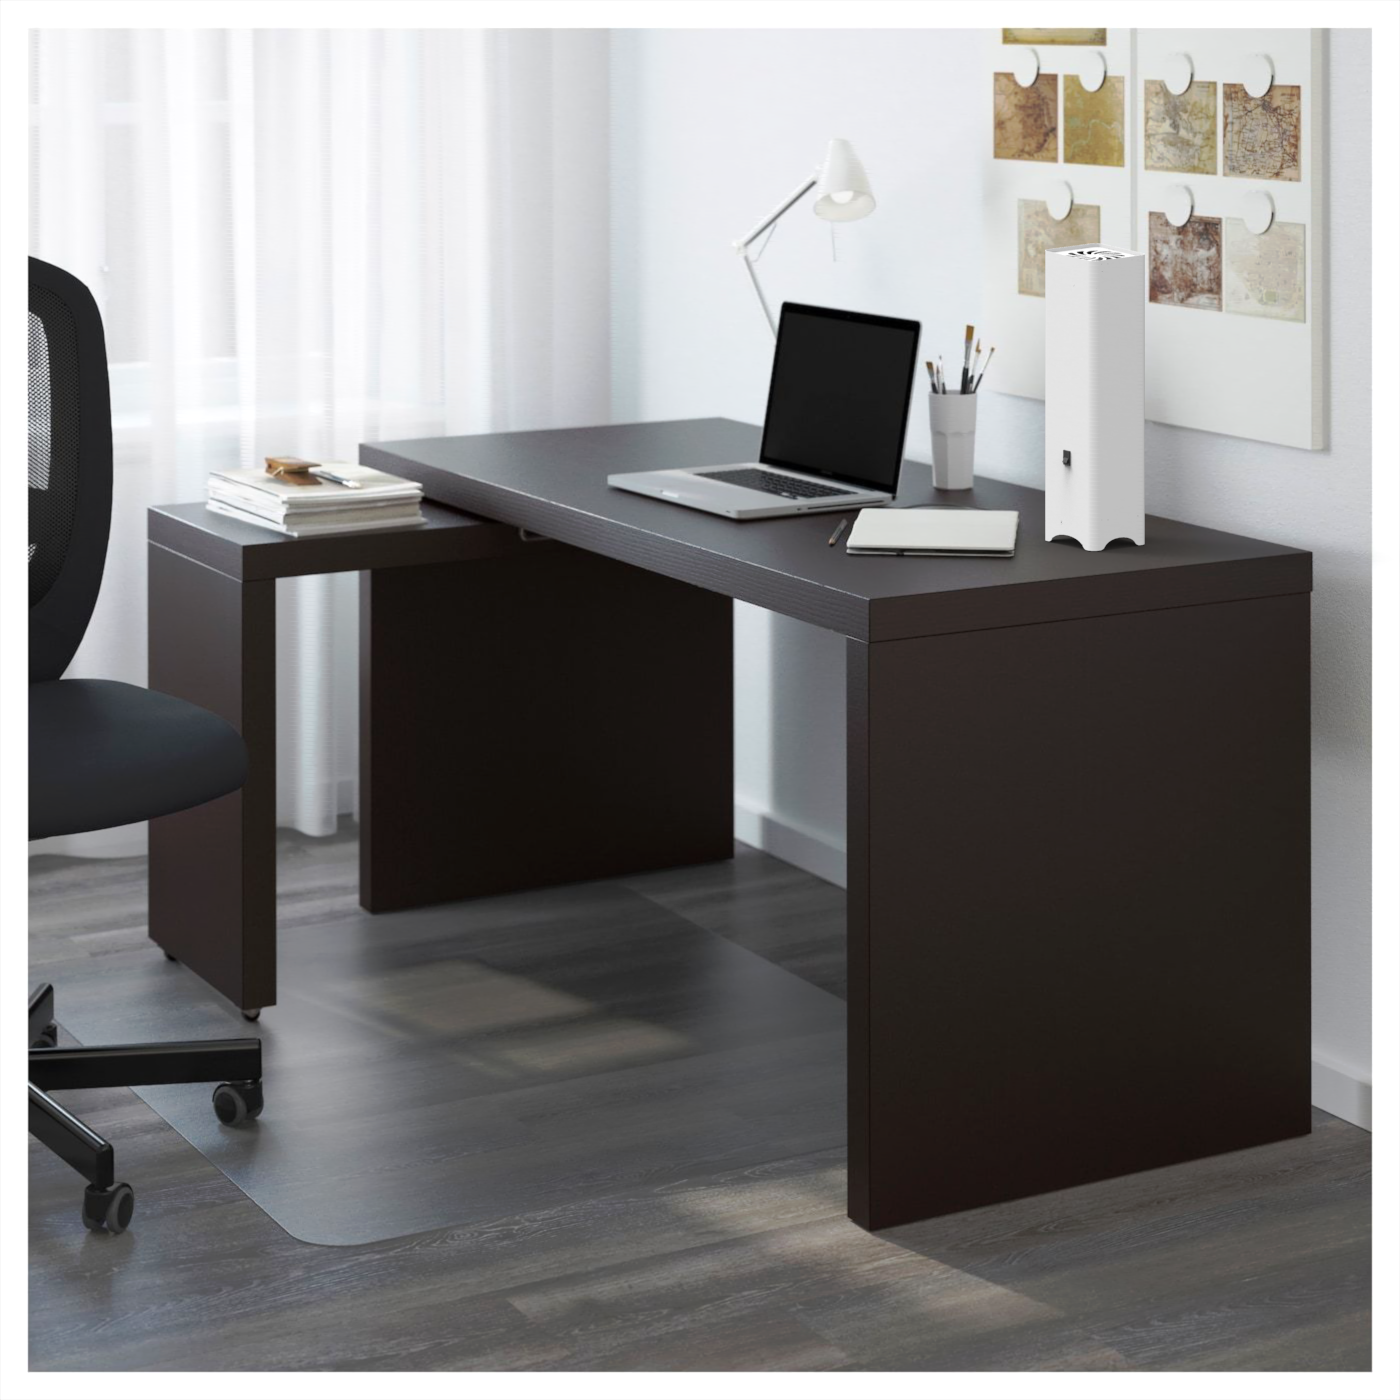 МАЛЬМ письменный стол с выдвижной панелью, черно-коричневый151x65 см